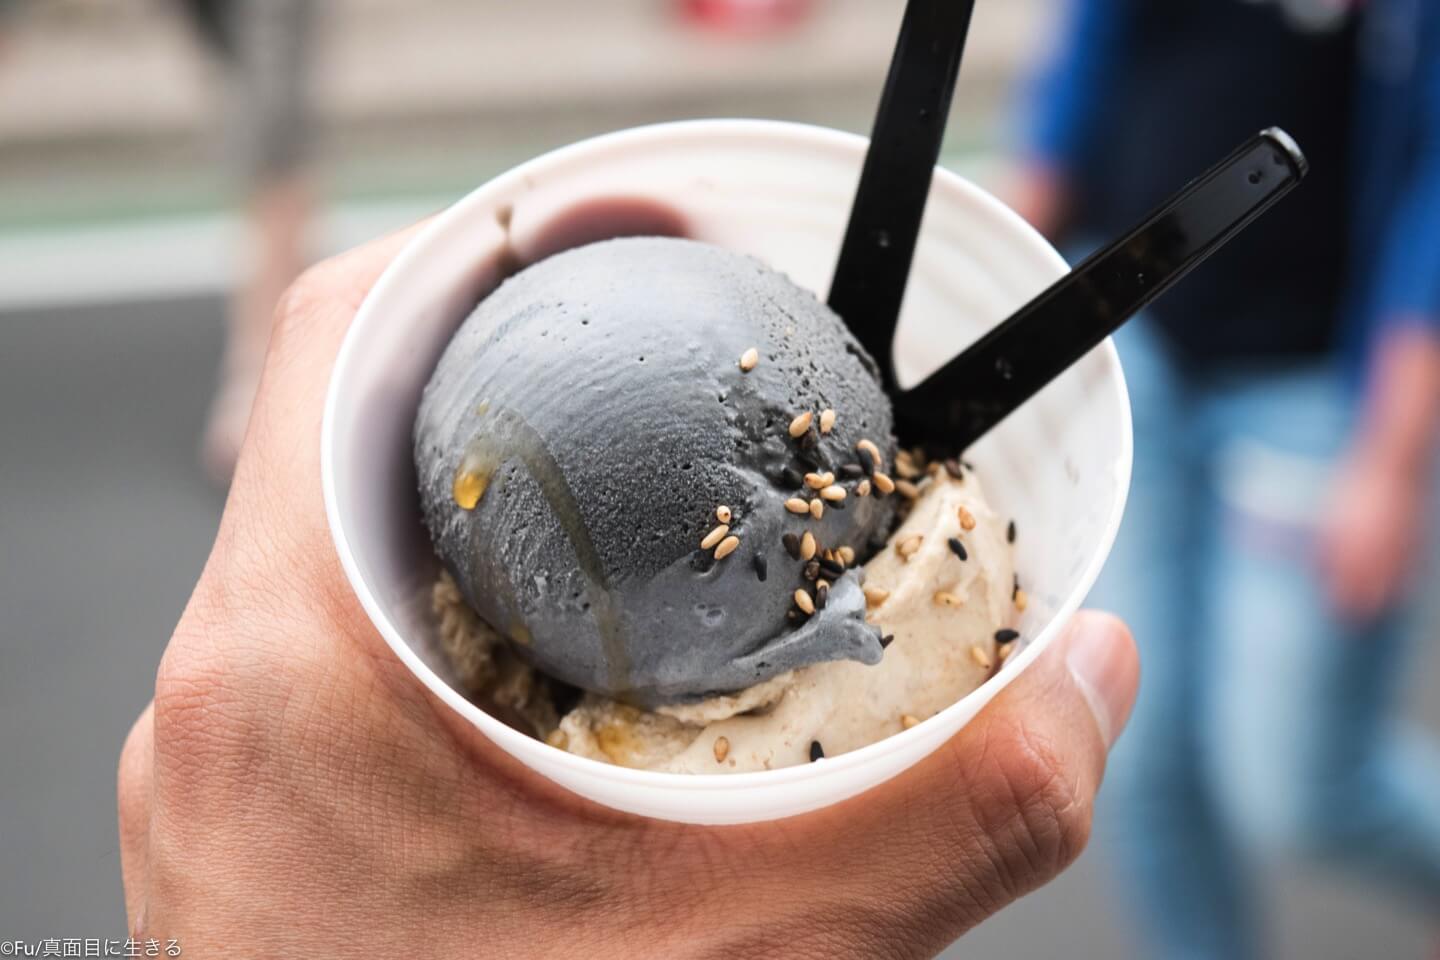 世界一濃厚な ごまアイス専門店 表参道「GOMAYA KUKI」9,000粒の胡麻を使ったアイスがヤバ旨い